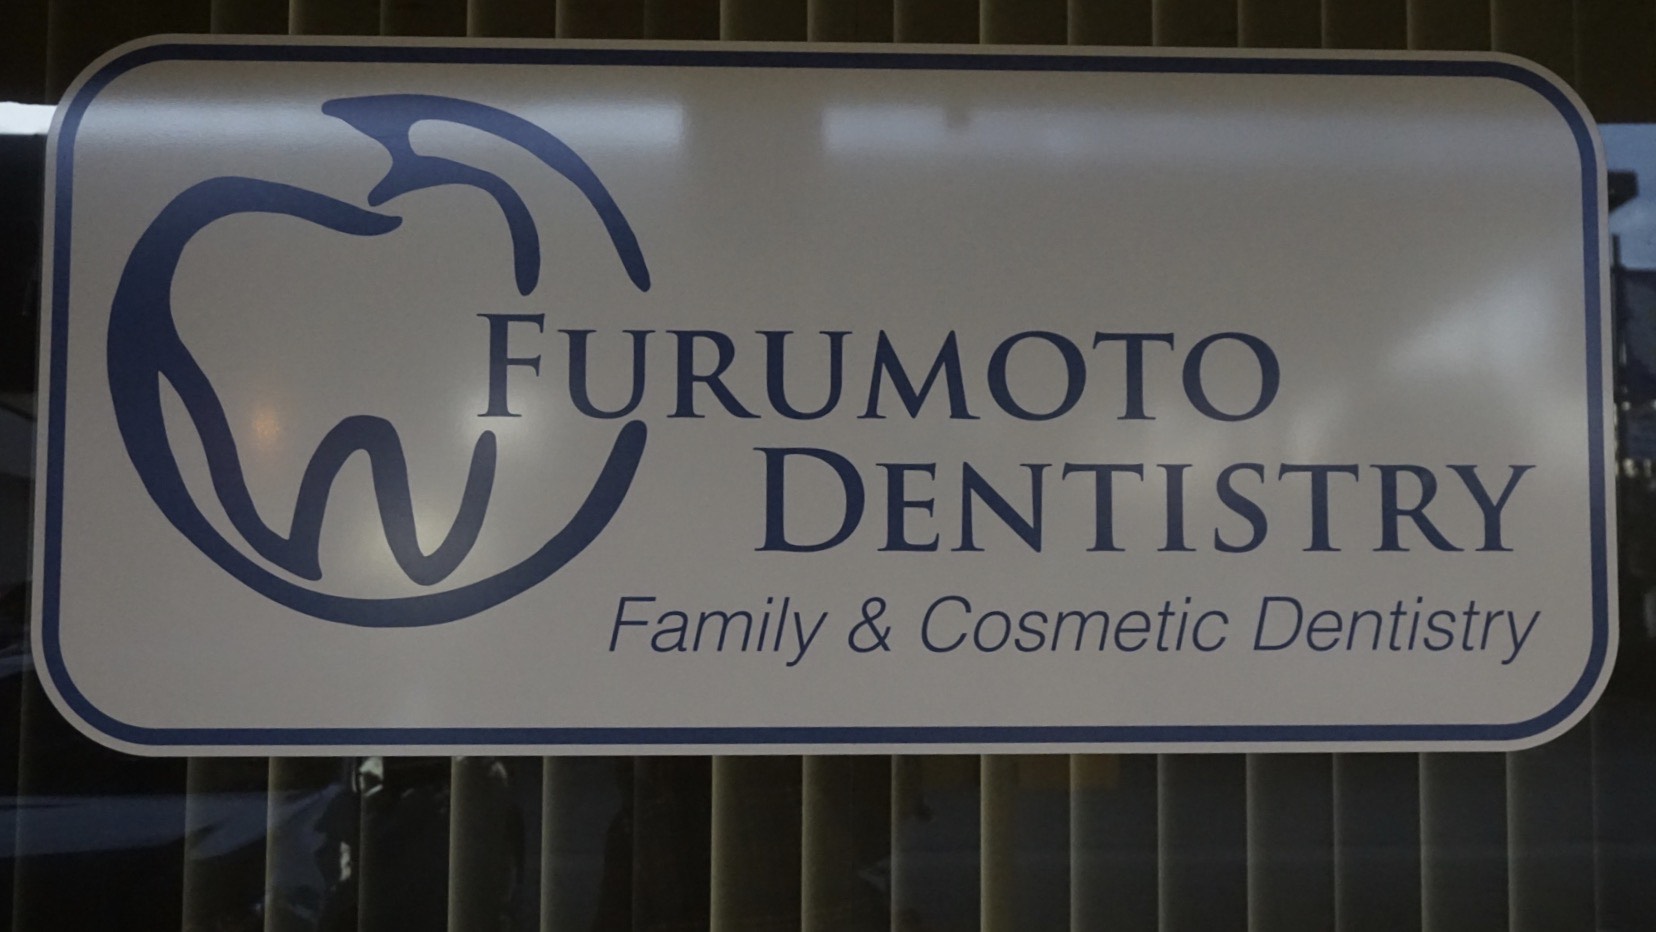 Dr. Furumoto Dentistry